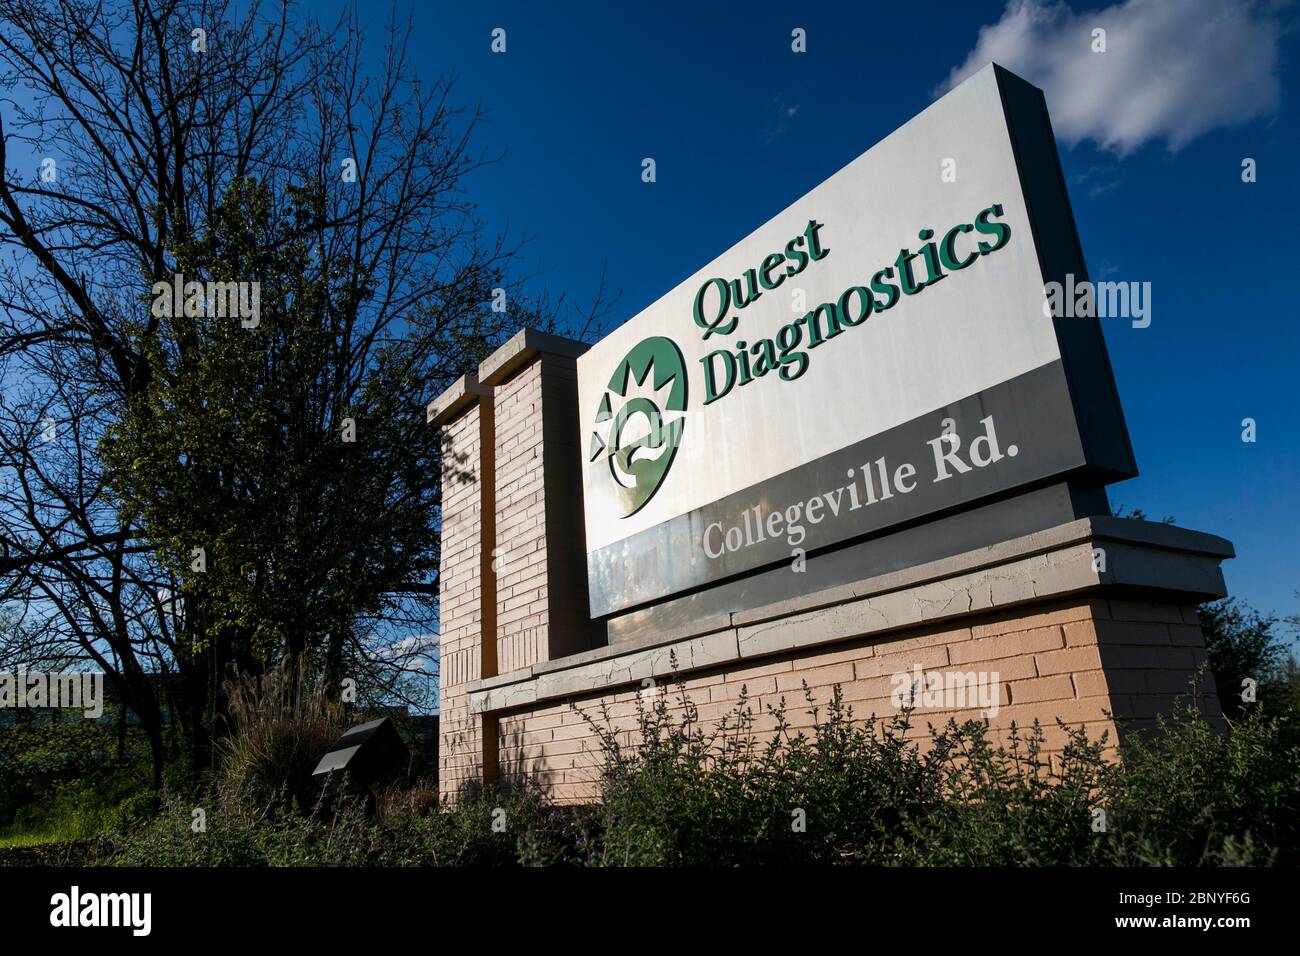 Un logo all'esterno di una struttura occupata da quest Diagnostics a Collegeville, Pennsylvania, il 4 maggio 2020. Foto Stock